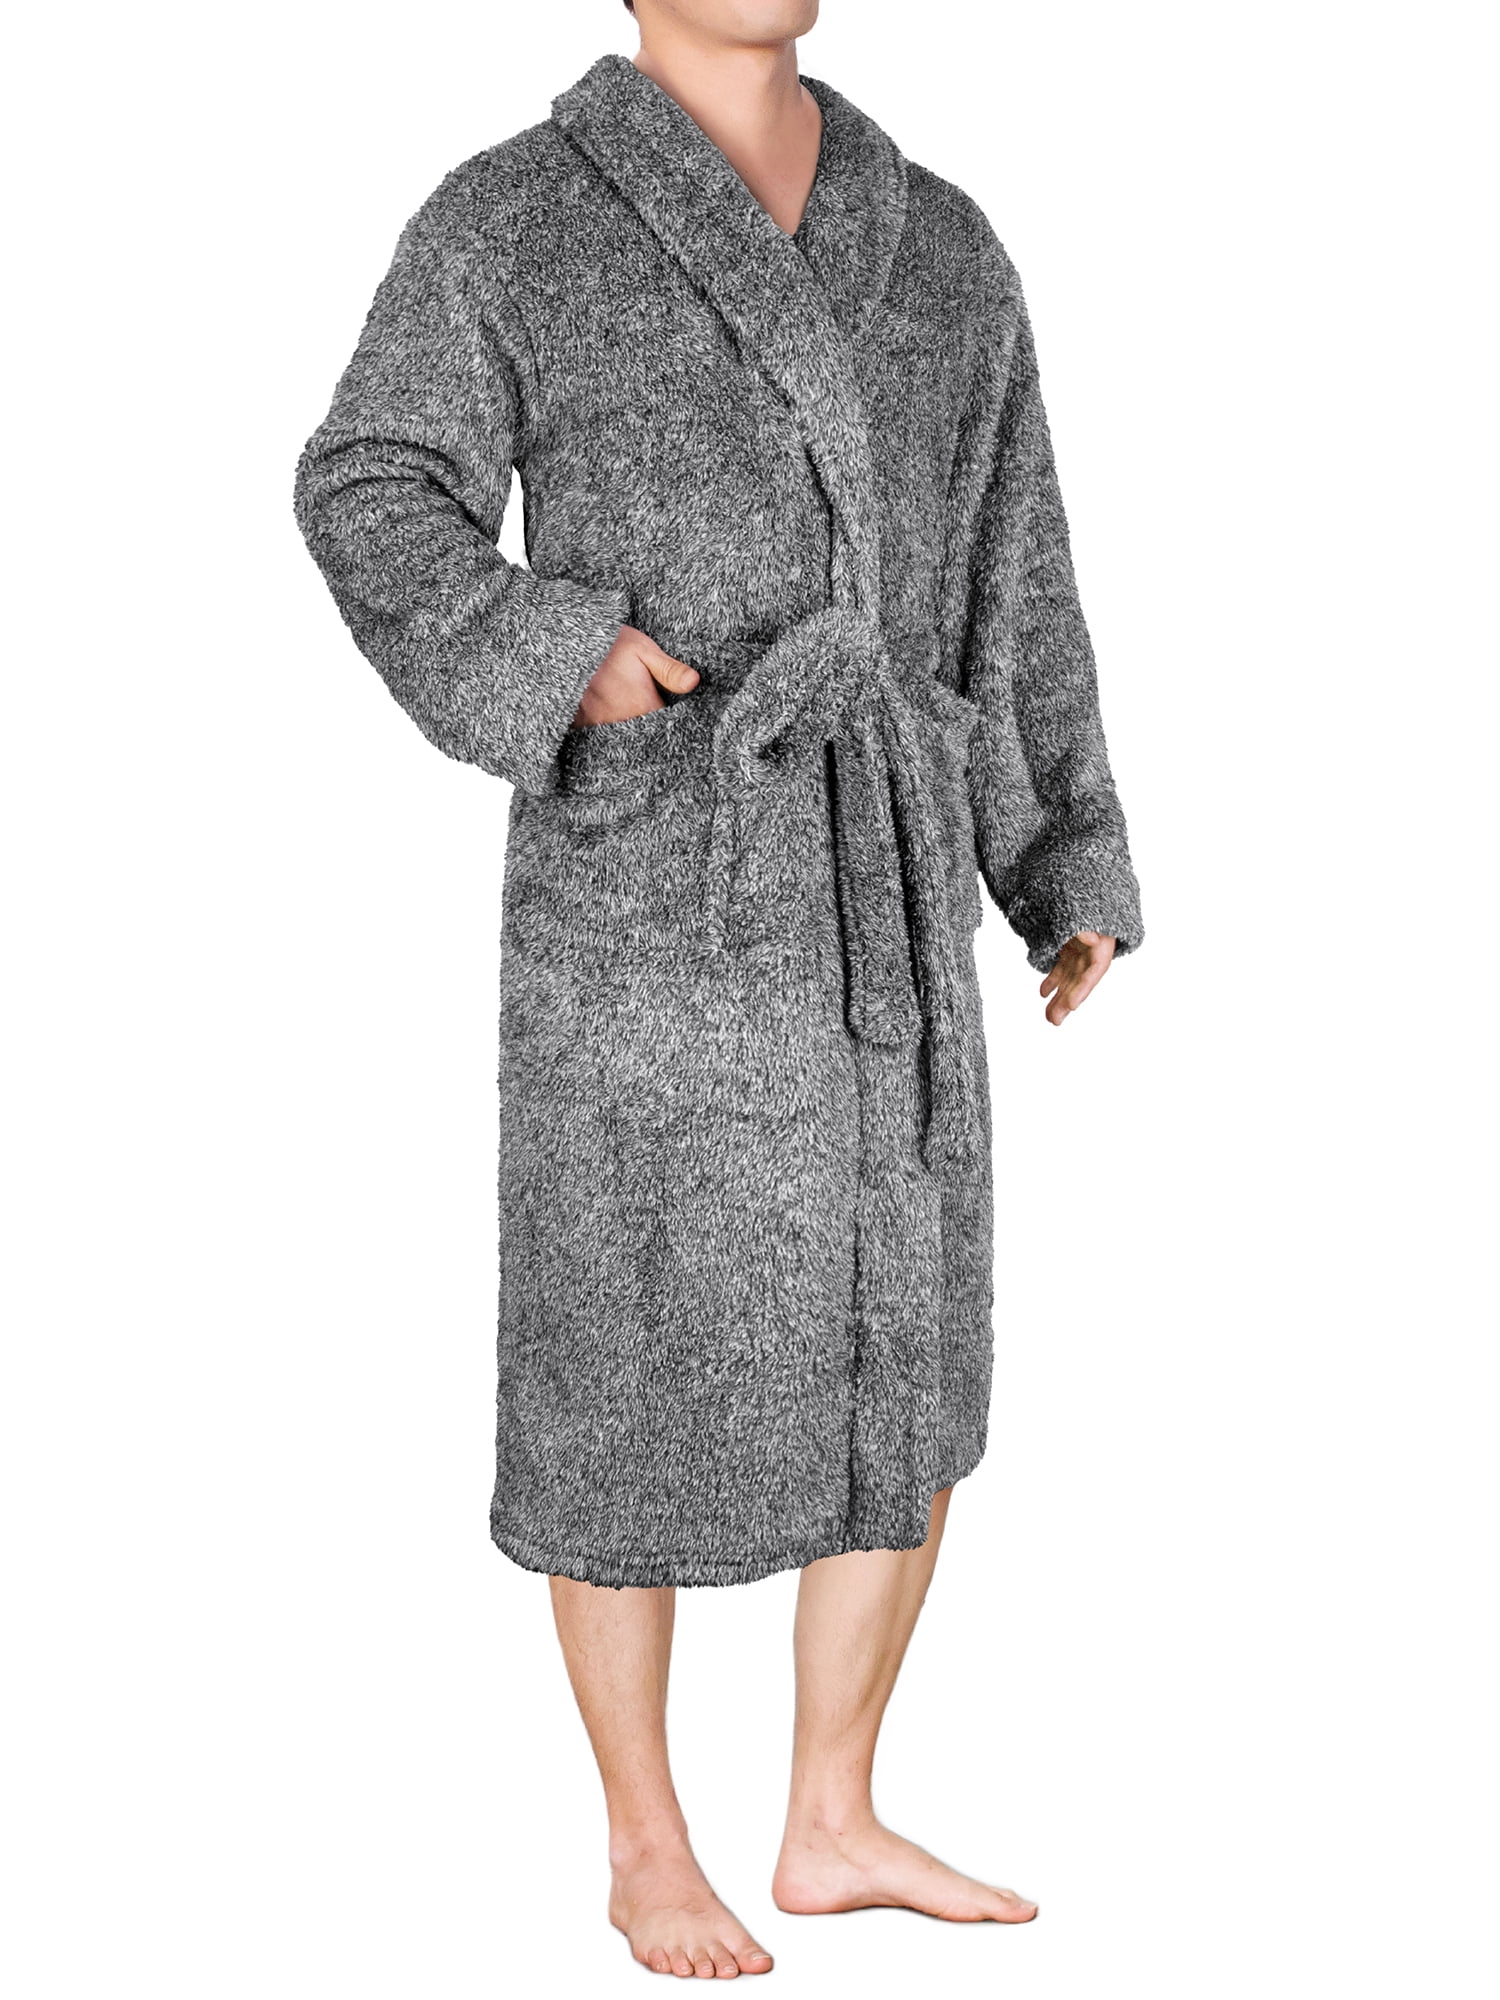 Fluffy Bath Robes For Men Plus Size Terry Cloth Plush Long Sleeve Shawl Collar Bathrobes Lightweight Sleepwear SPA Robe 